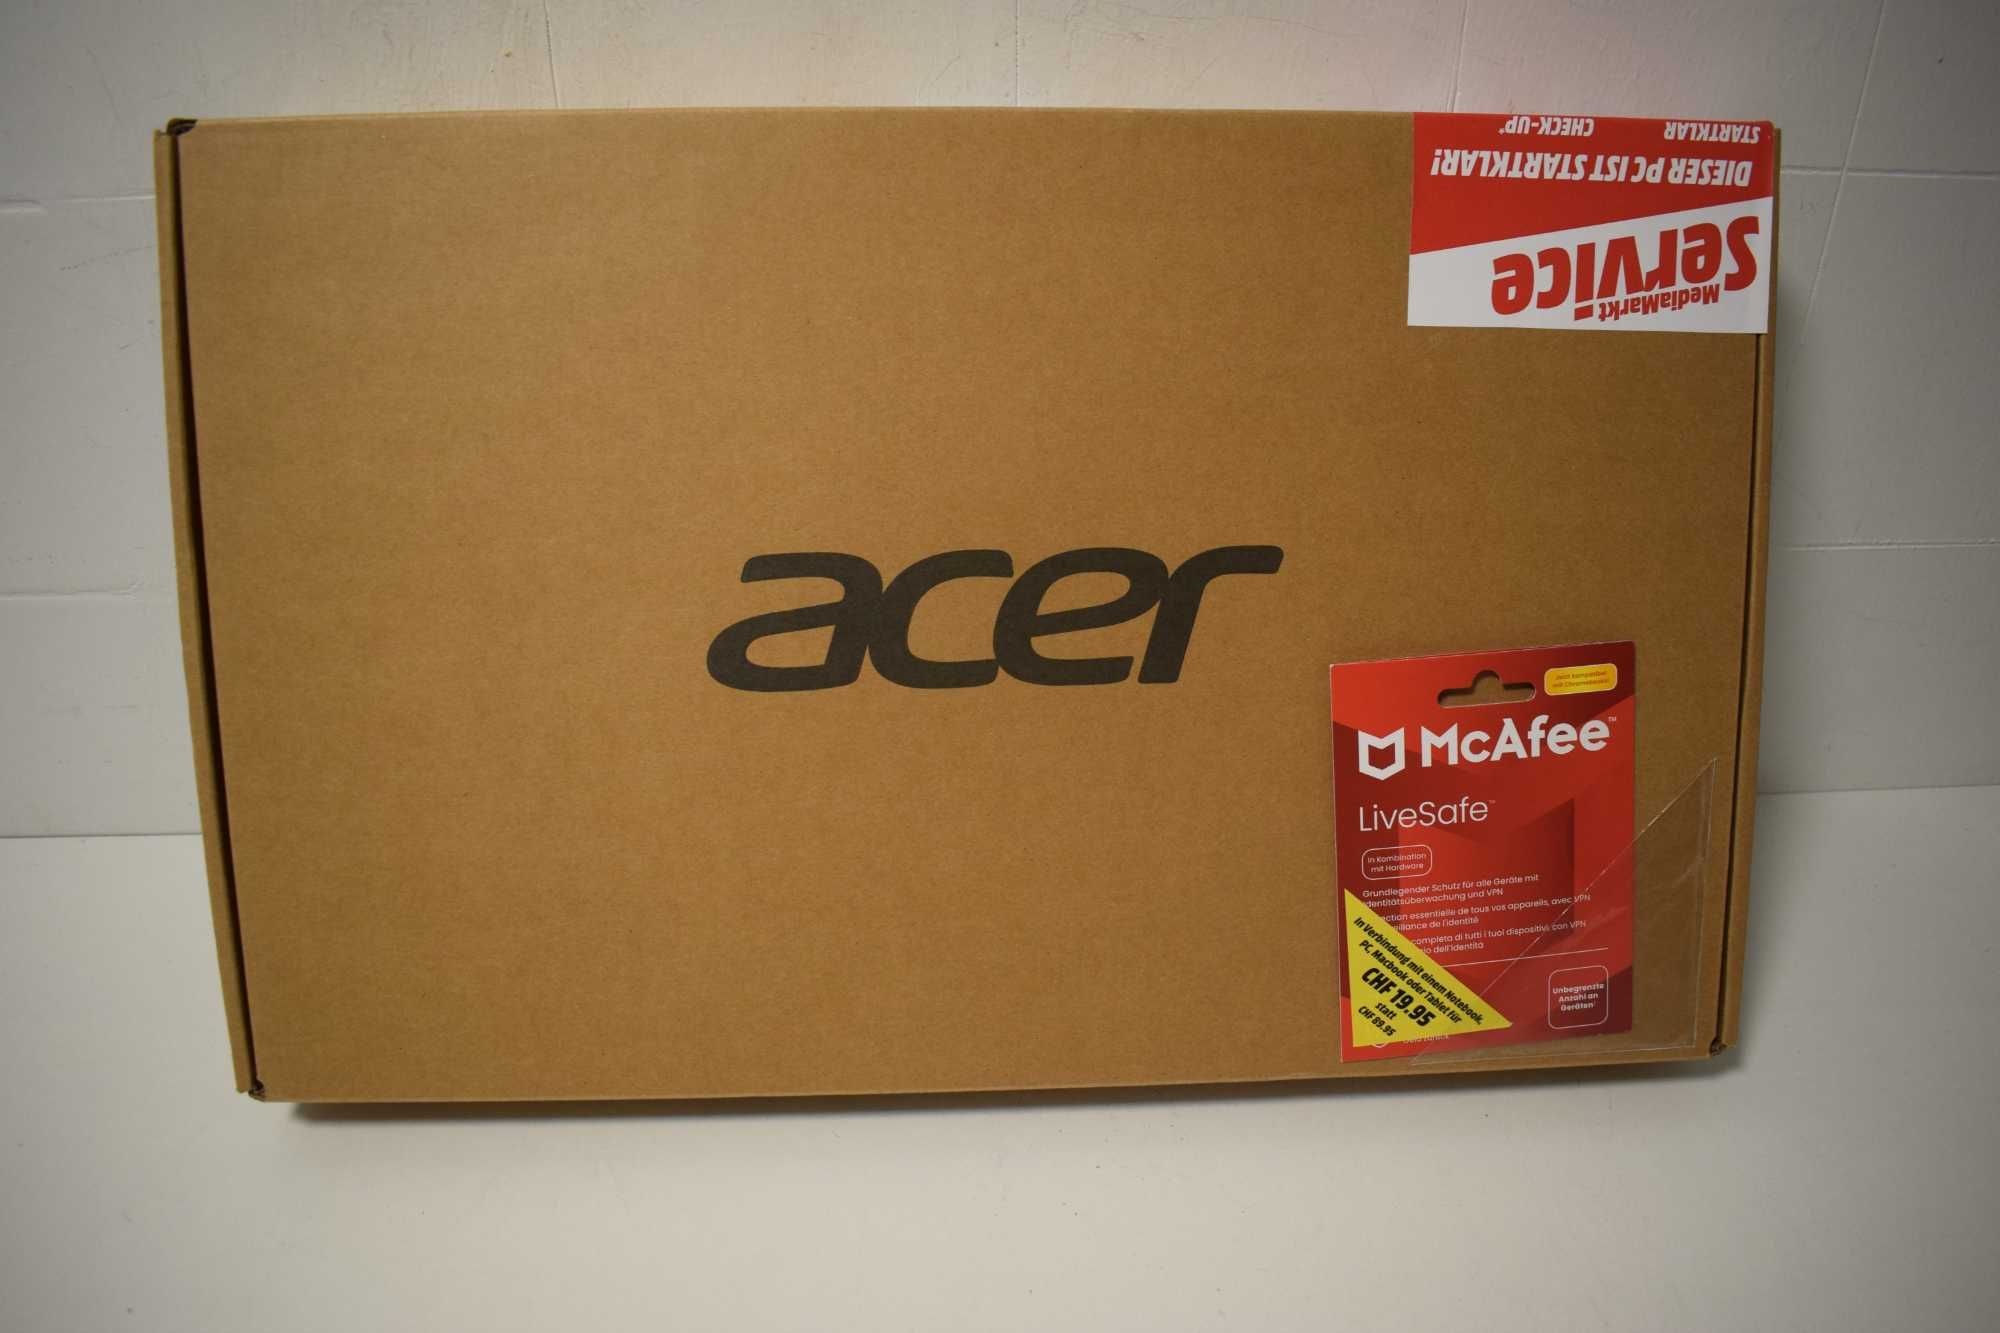 Vendo Leptop da marca Acer novo na caixa com garantia